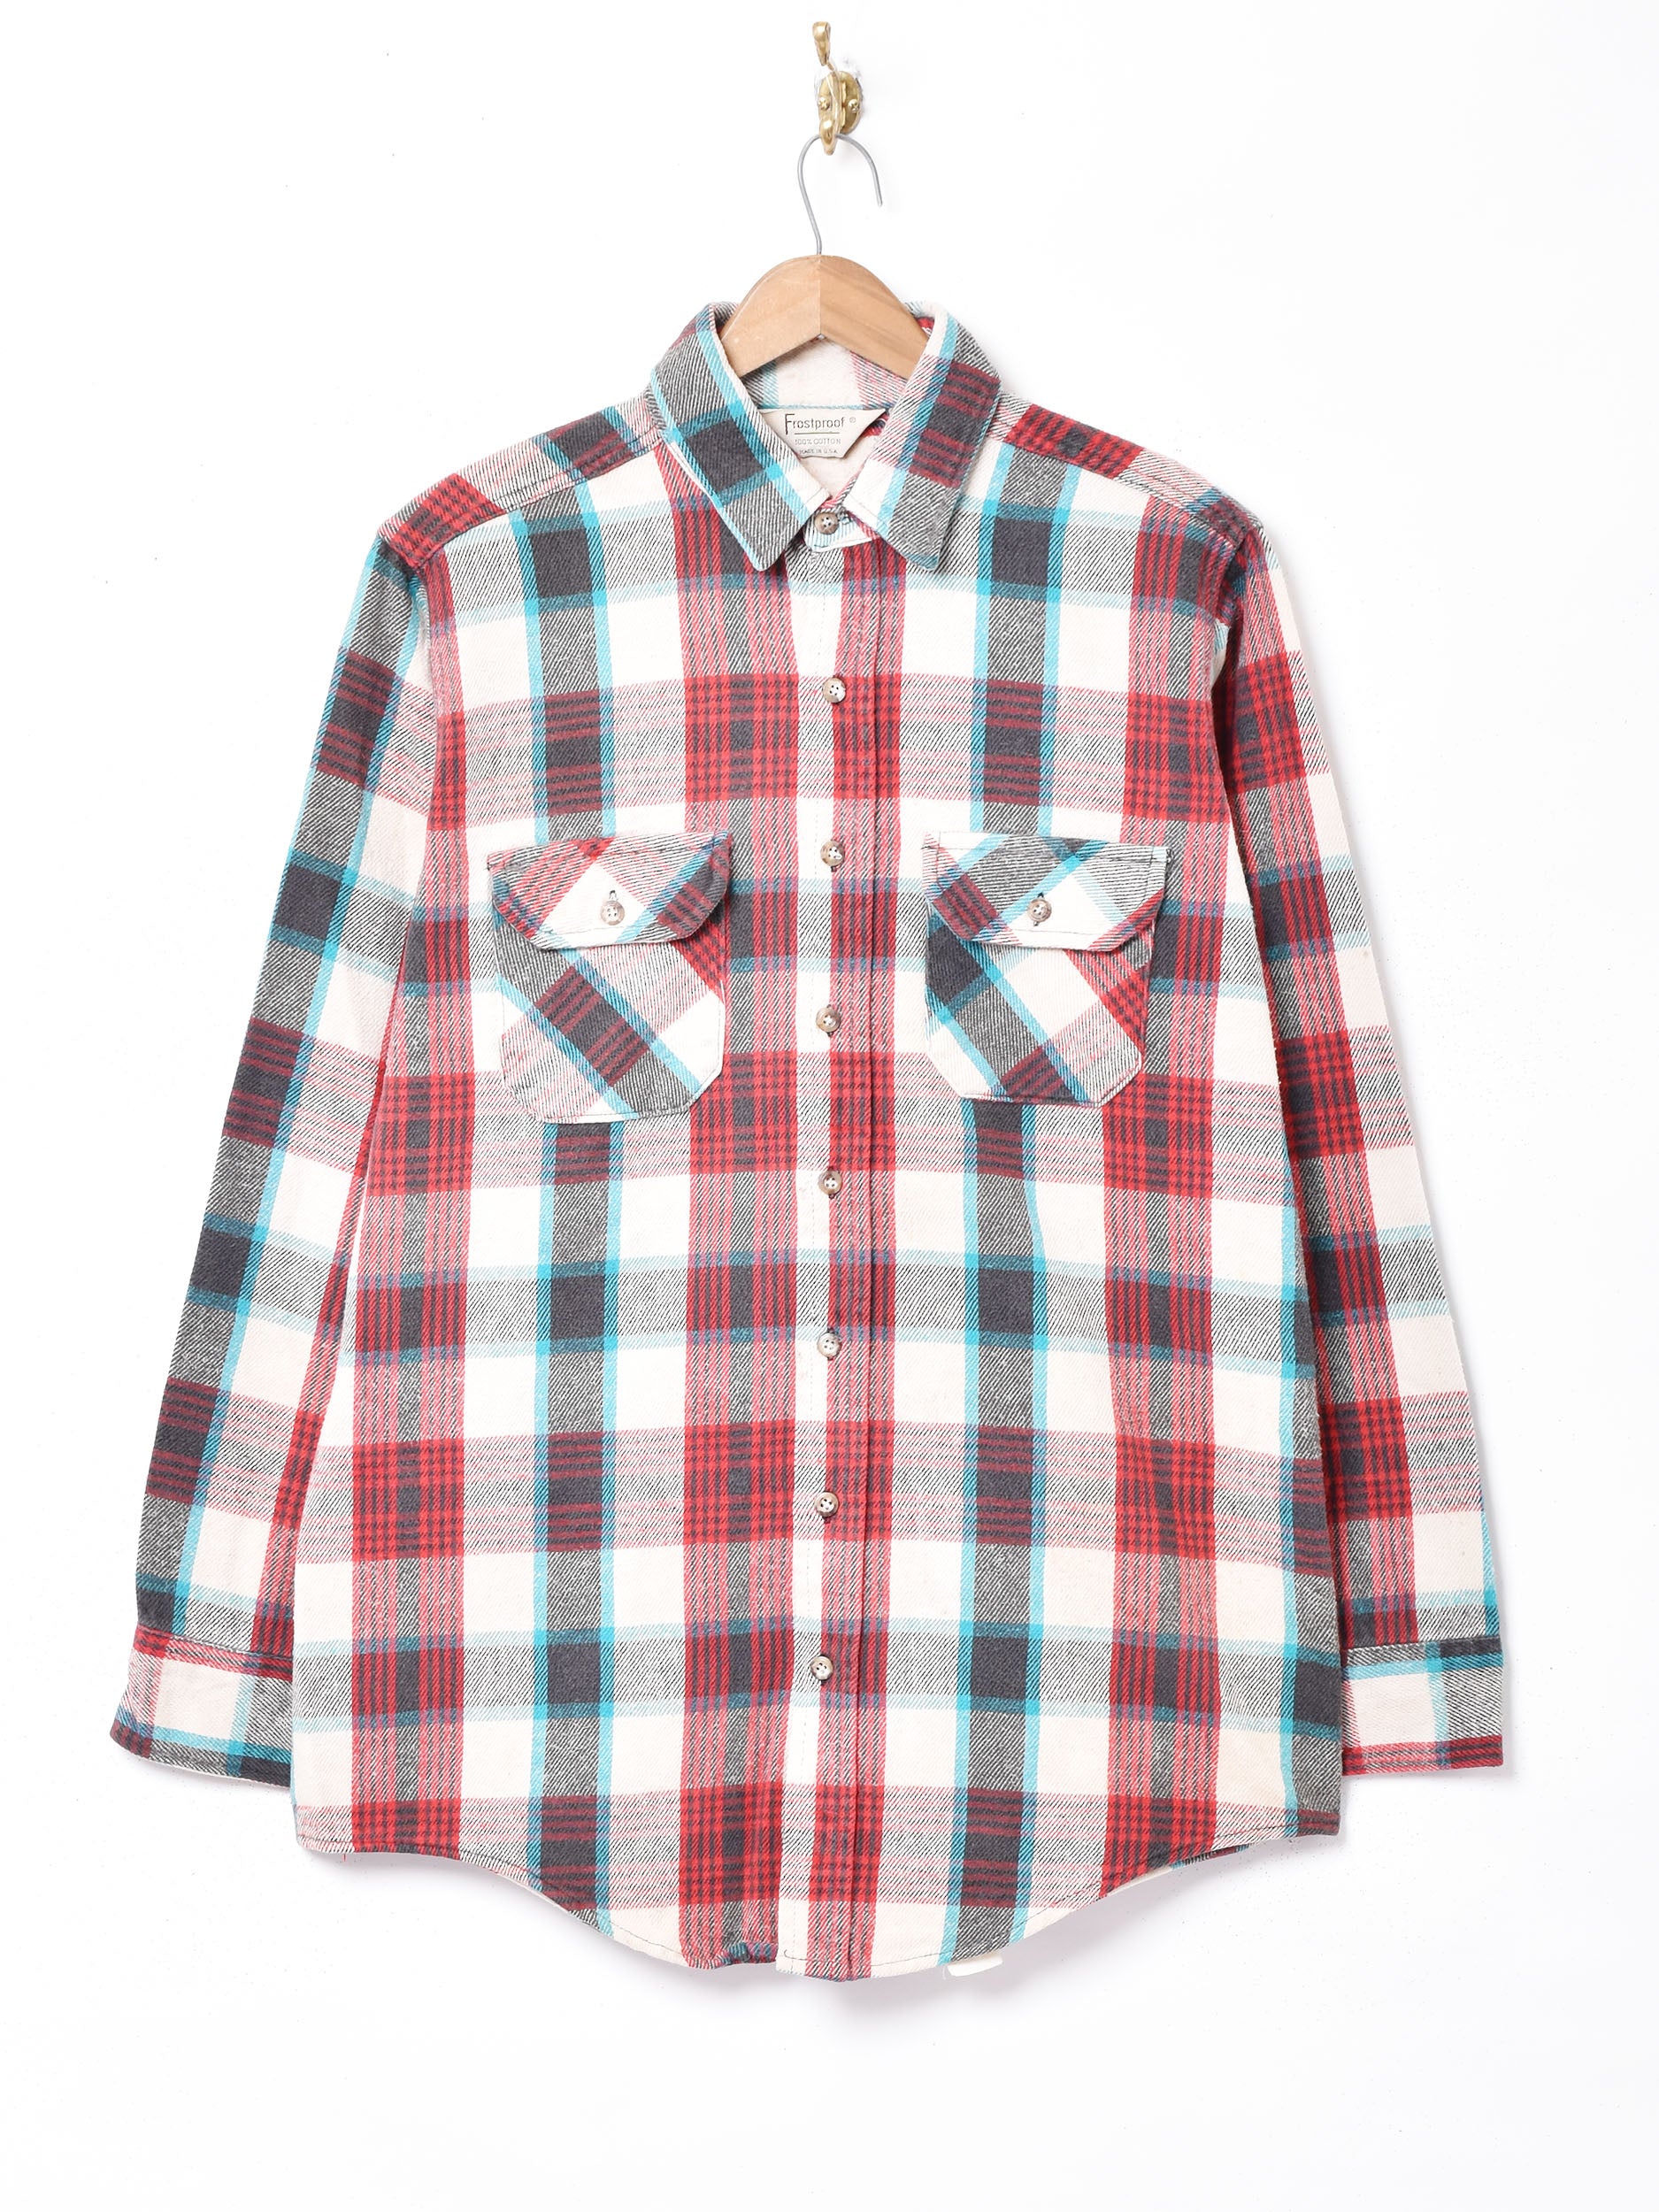 アメリカ製ヘビーネルシャツ – 古着屋Top of the Hillのネット通販サイト